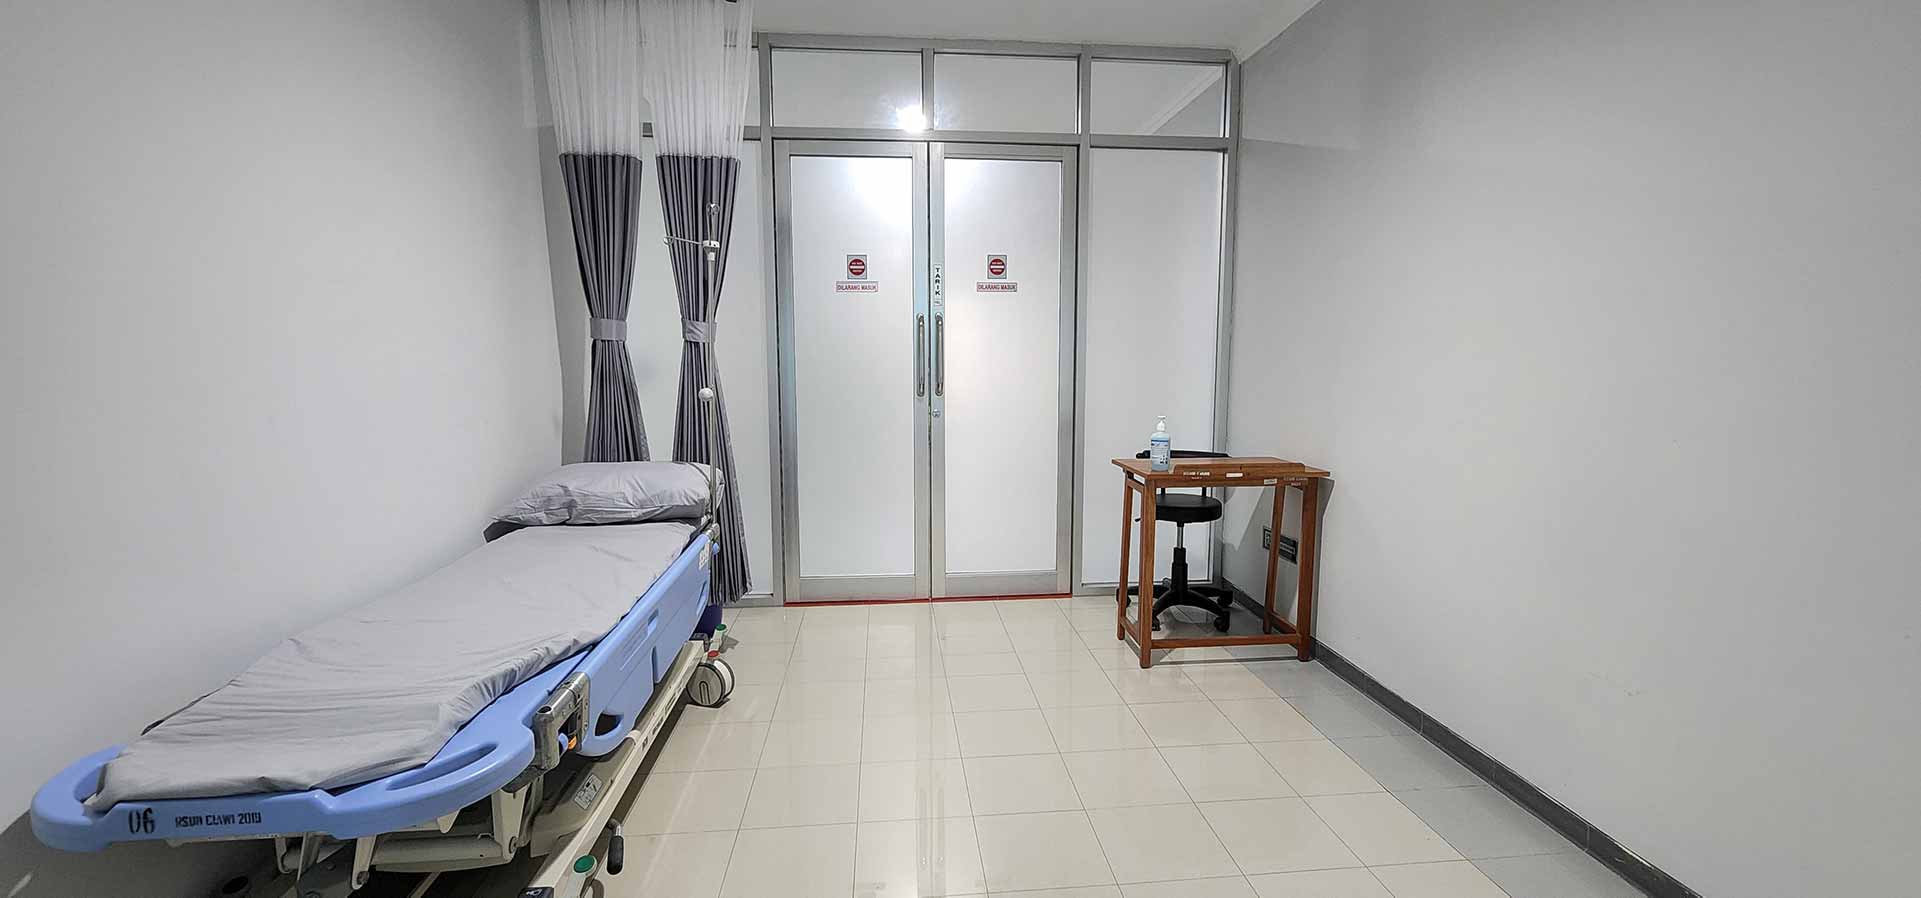 Ruang Serah Terima pada Bogor Pain Center.